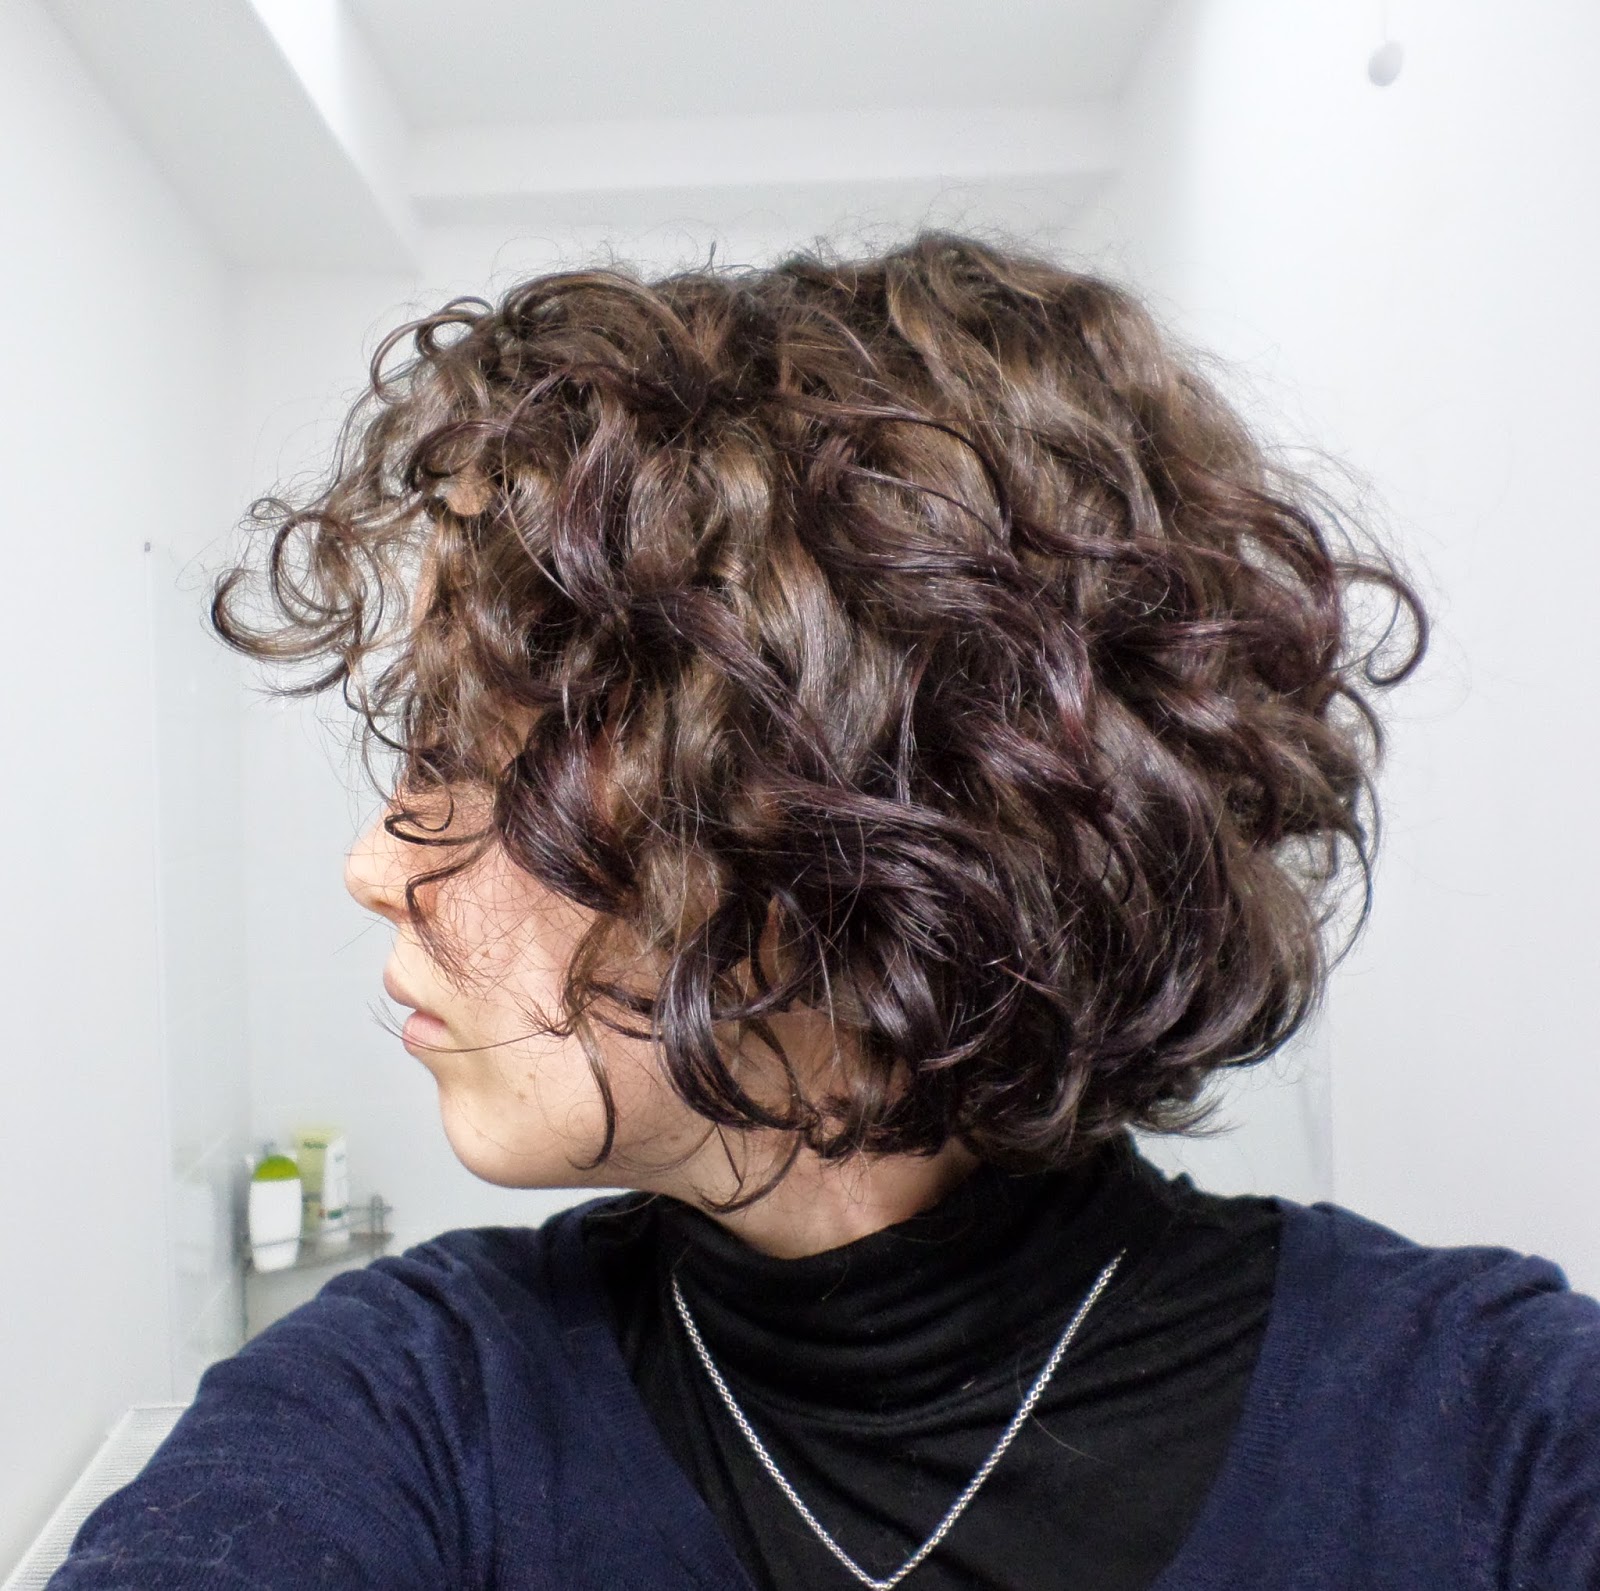 Cheveux bouclés: La transition capillaire - Bouclette Italienne